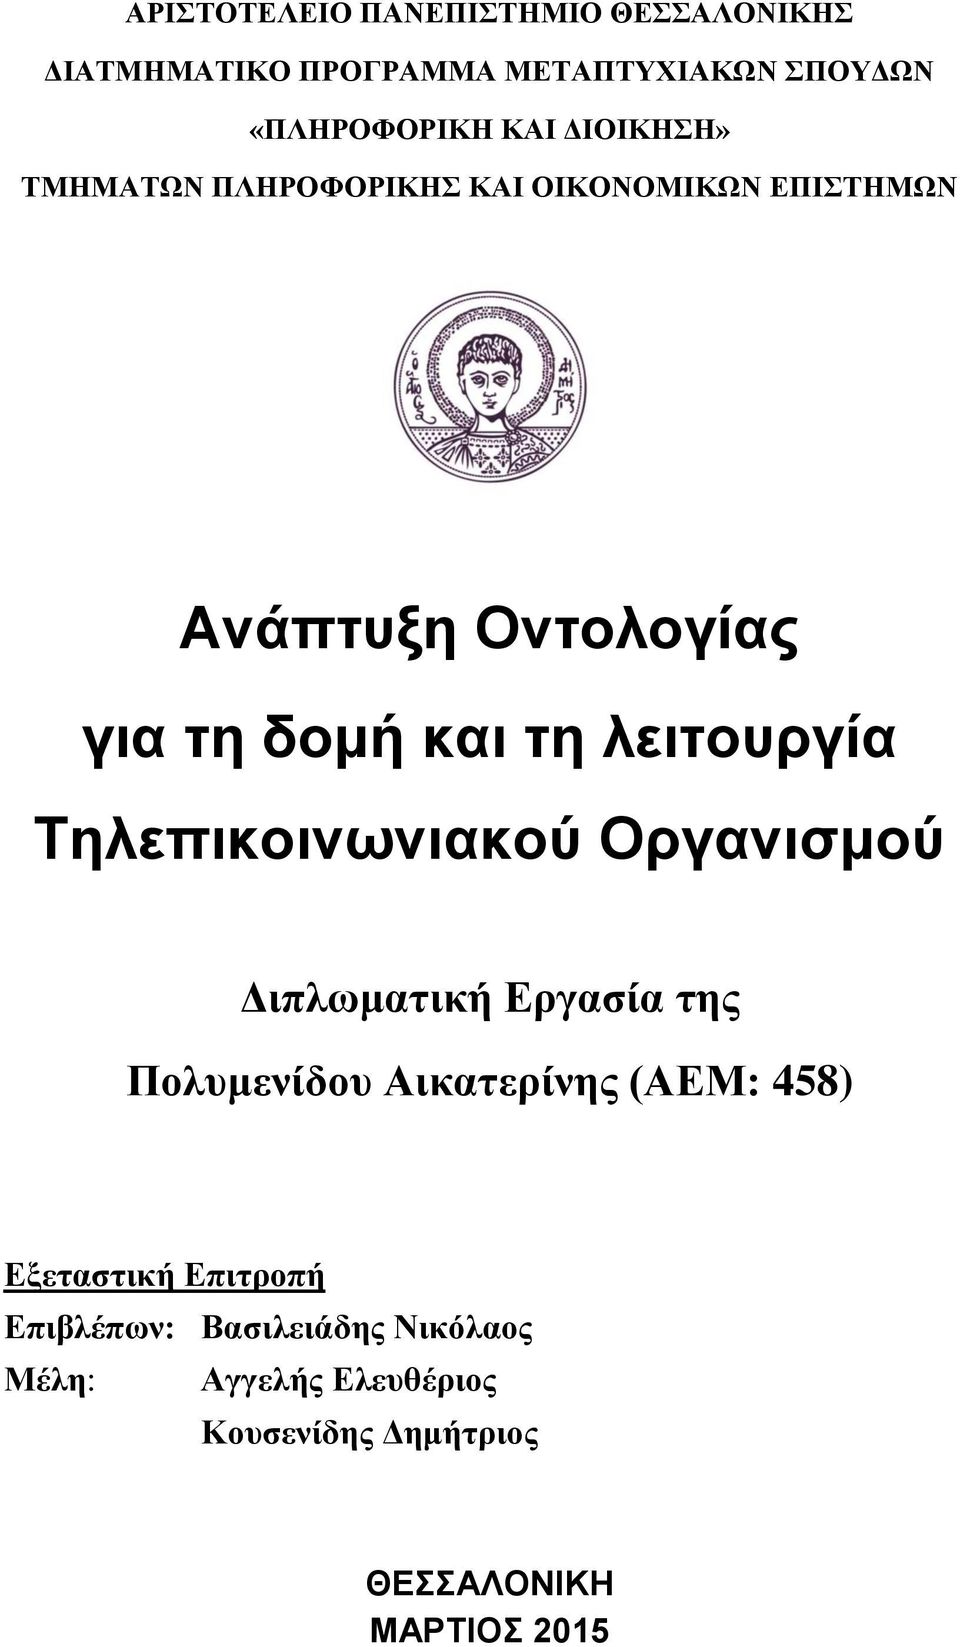 λειτουργία Τηλεπικοινωνιακού Οργανισμού Διπλωματική Εργασία της Πολυμενίδου Αικατερίνης (ΑΕΜ: 458)